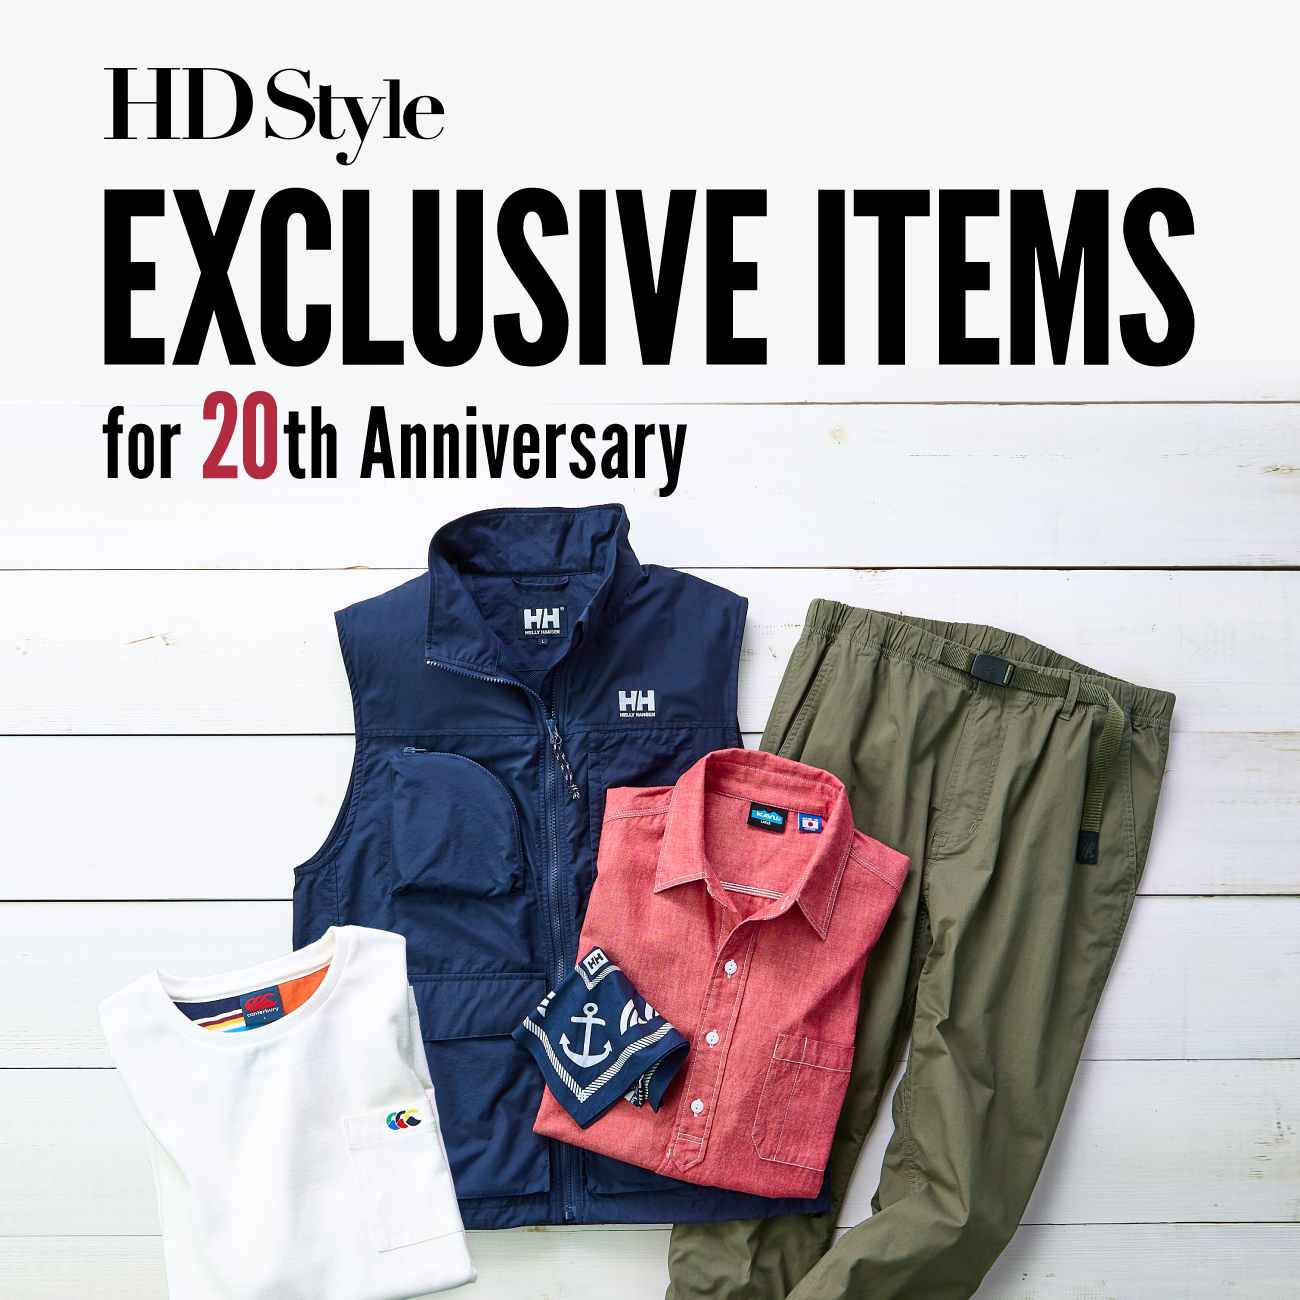 【特集】Exclusive Items for HDStyle 20th Anniversary